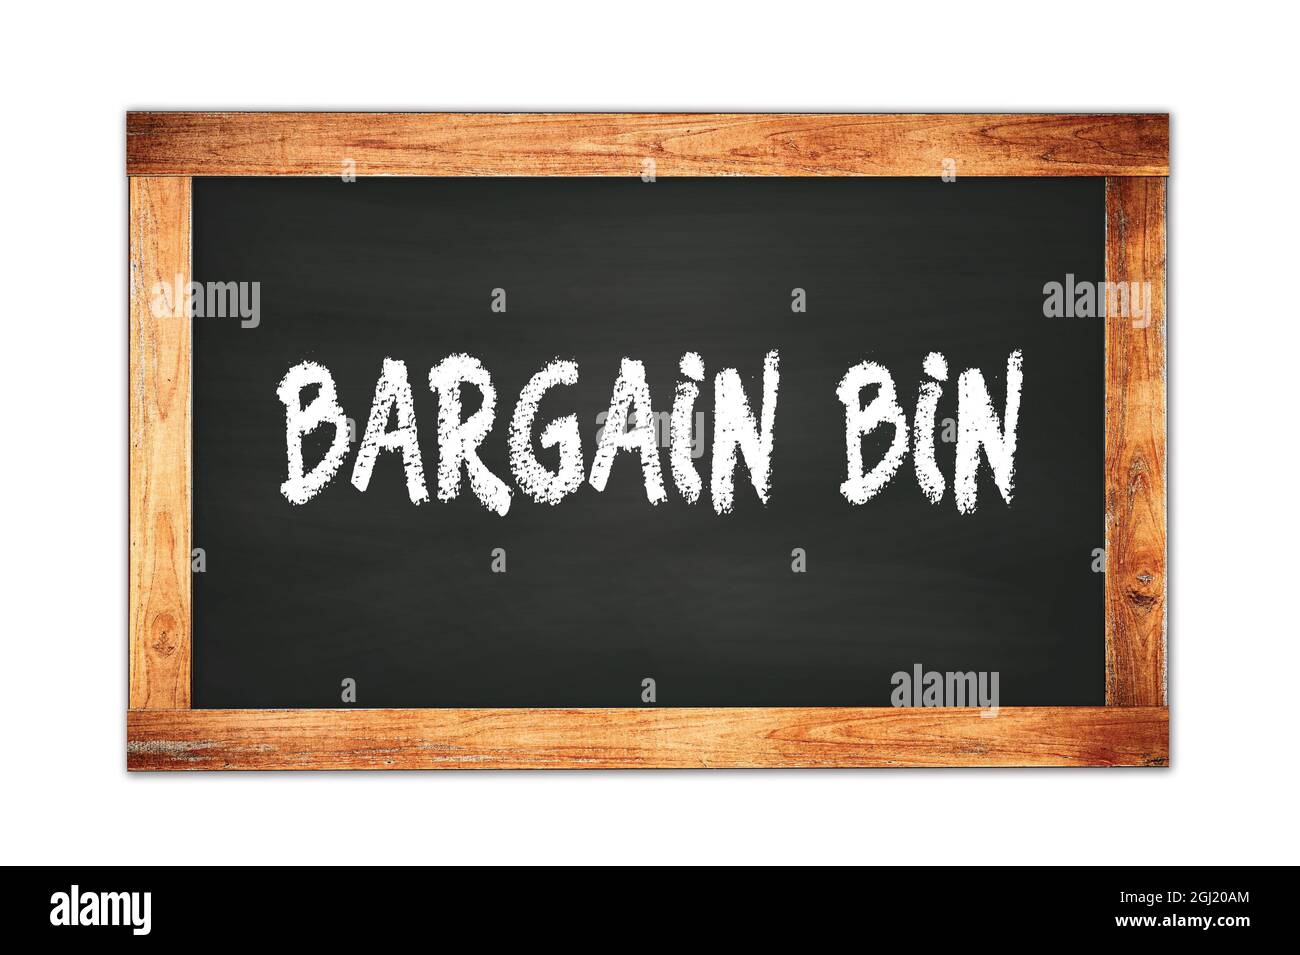 BARGAIN  BIN text written on black wooden frame school blackboard. Stock Photo